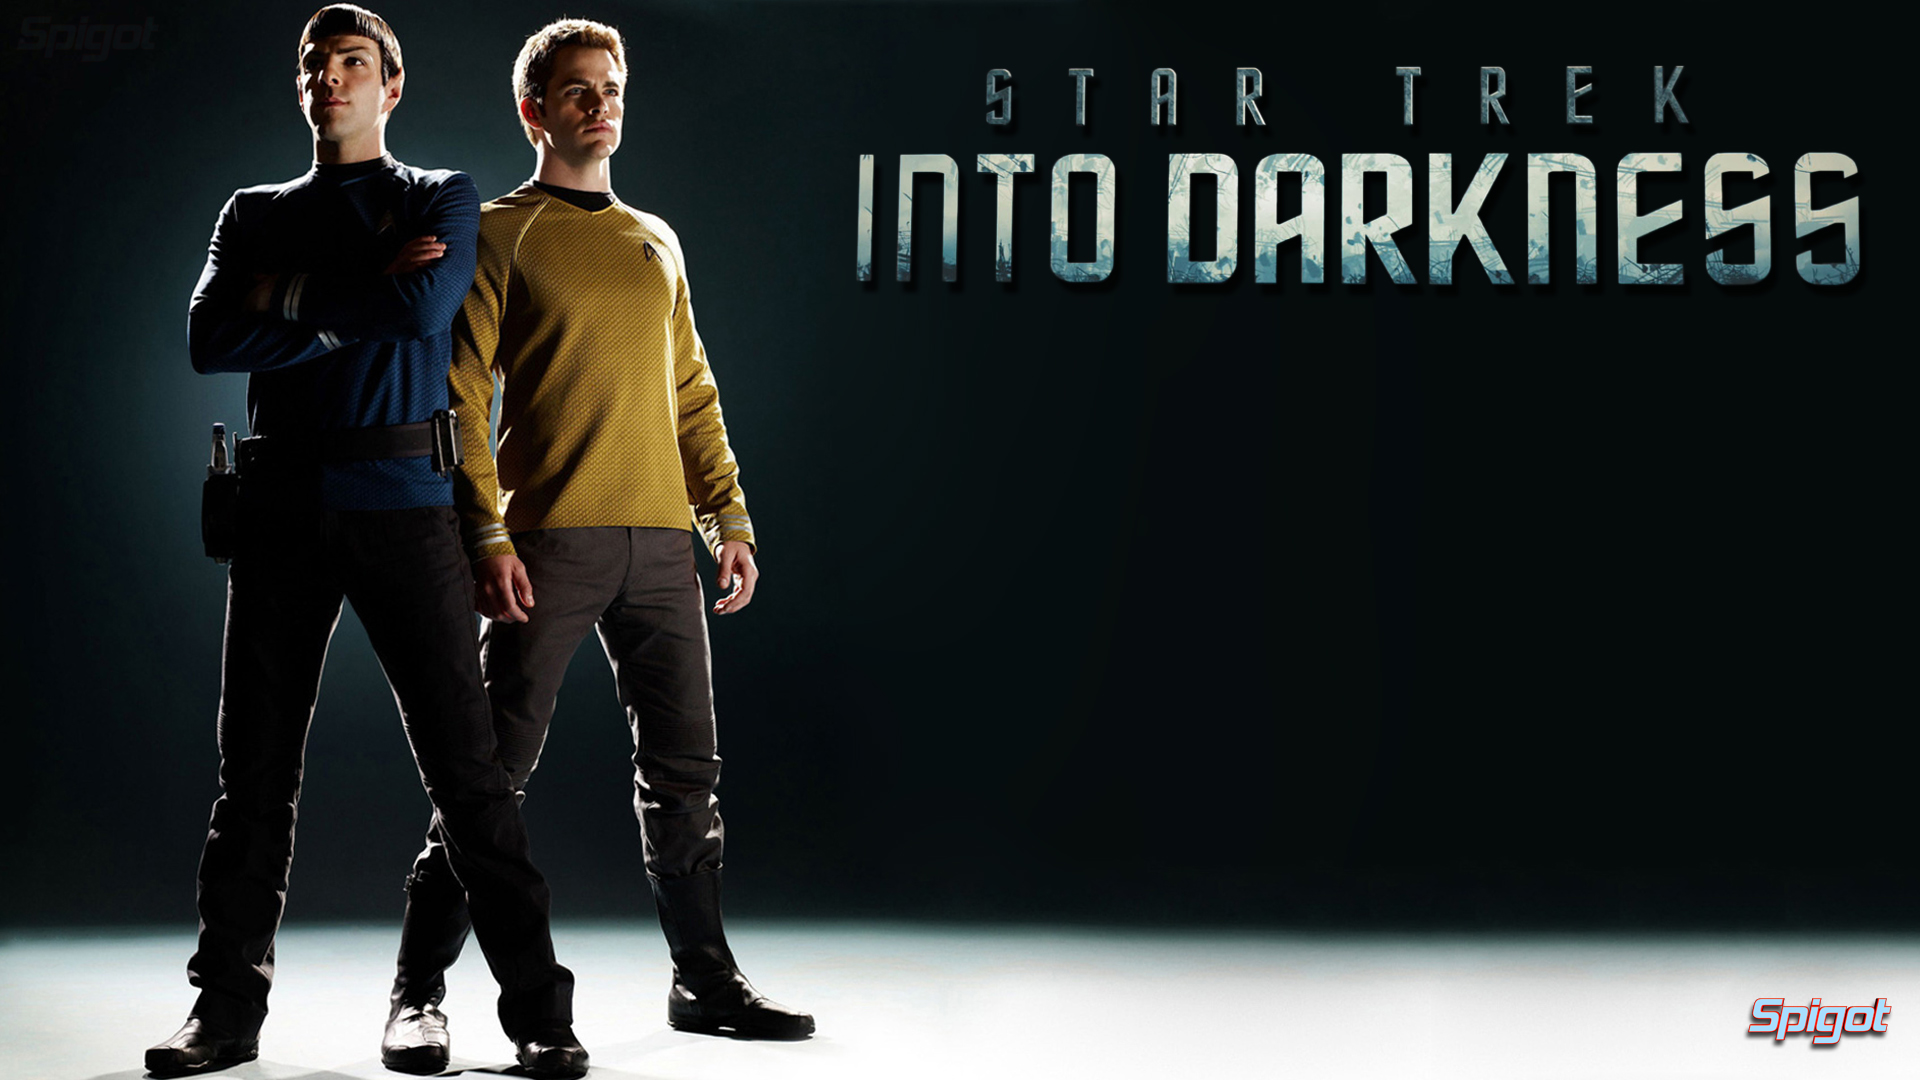 Star Trek Into Darkness Movie Wallpaper Background